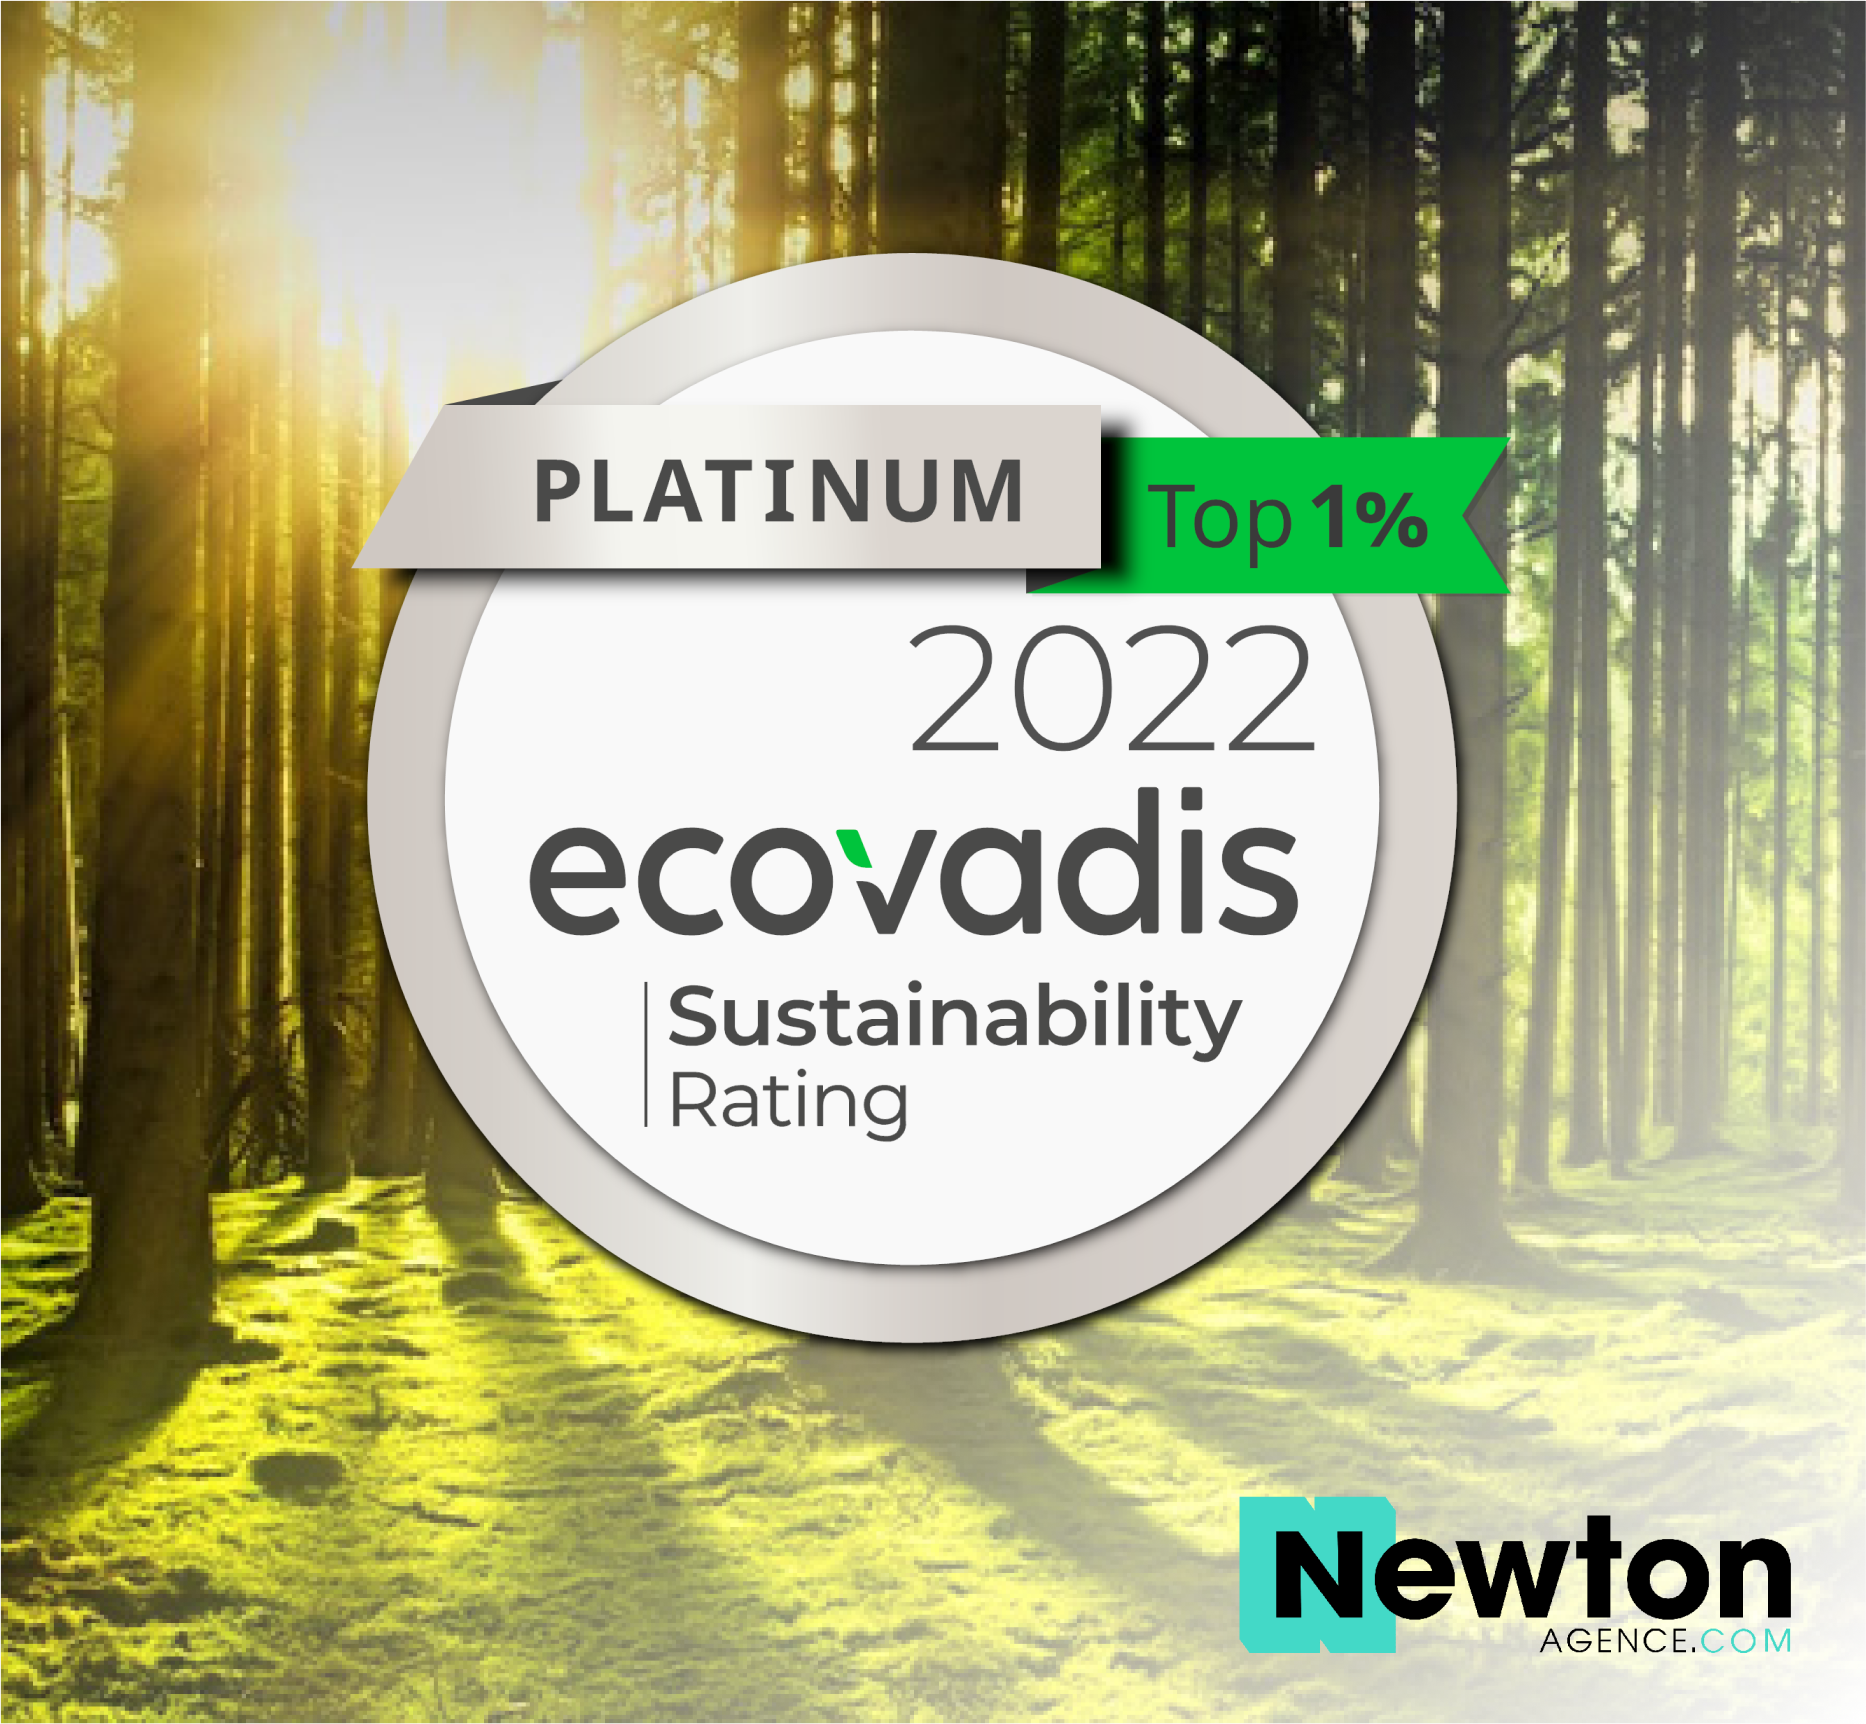 Newton Agence obtient la médaille platine Ecovadis 2022